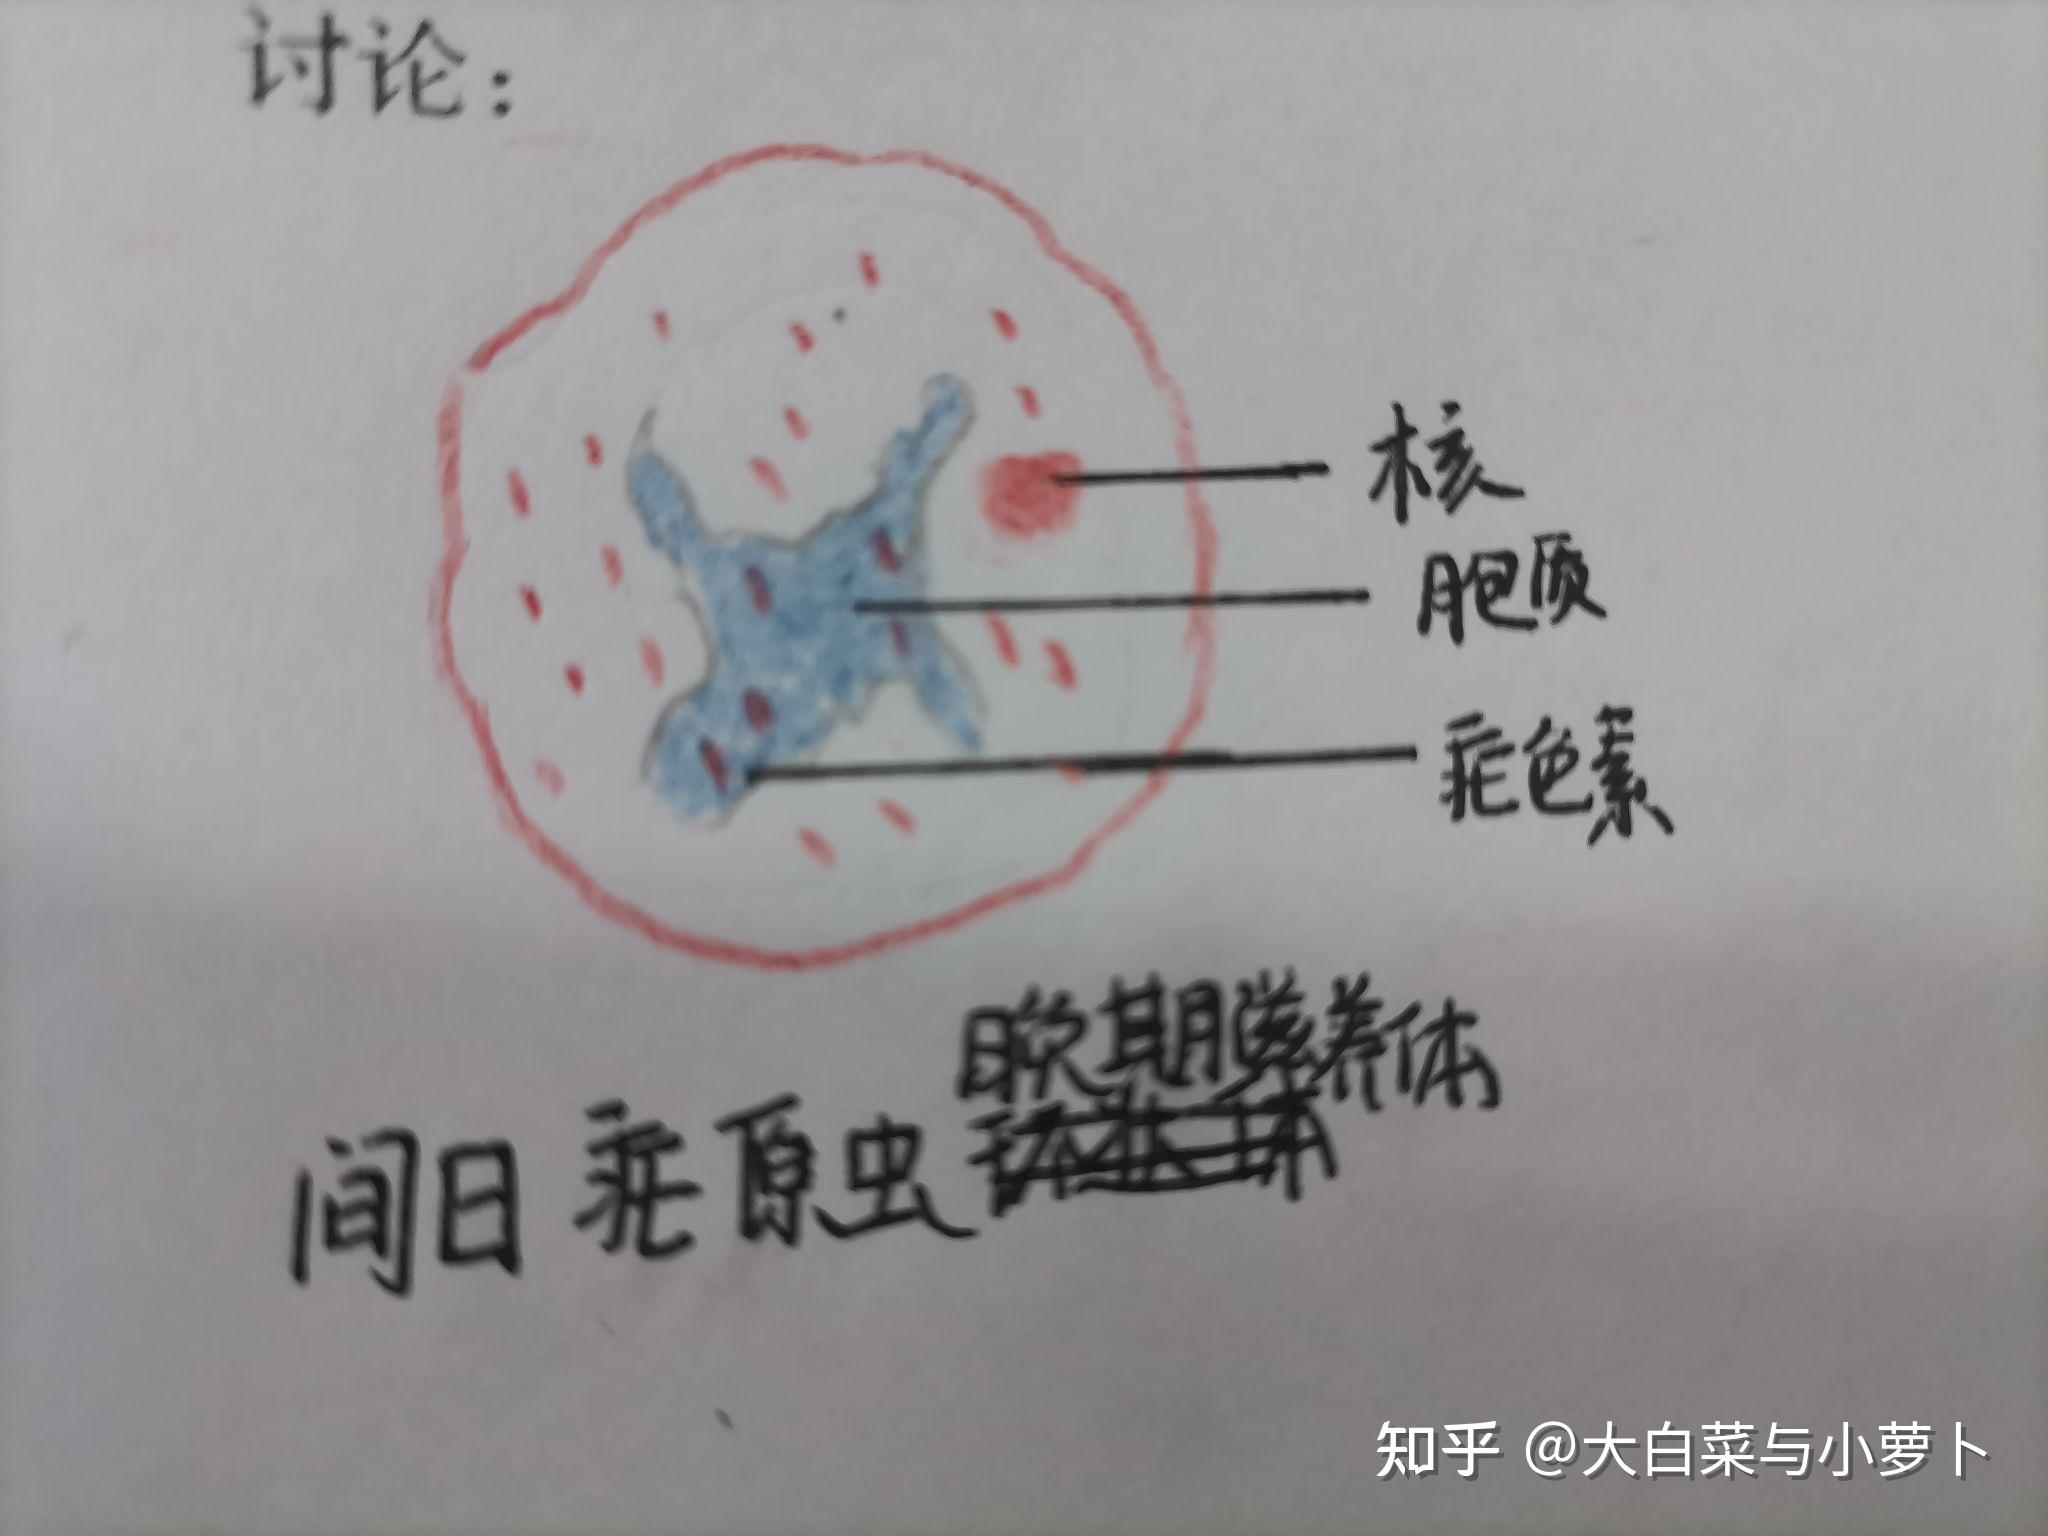 疟原虫红蓝铅笔绘图图片